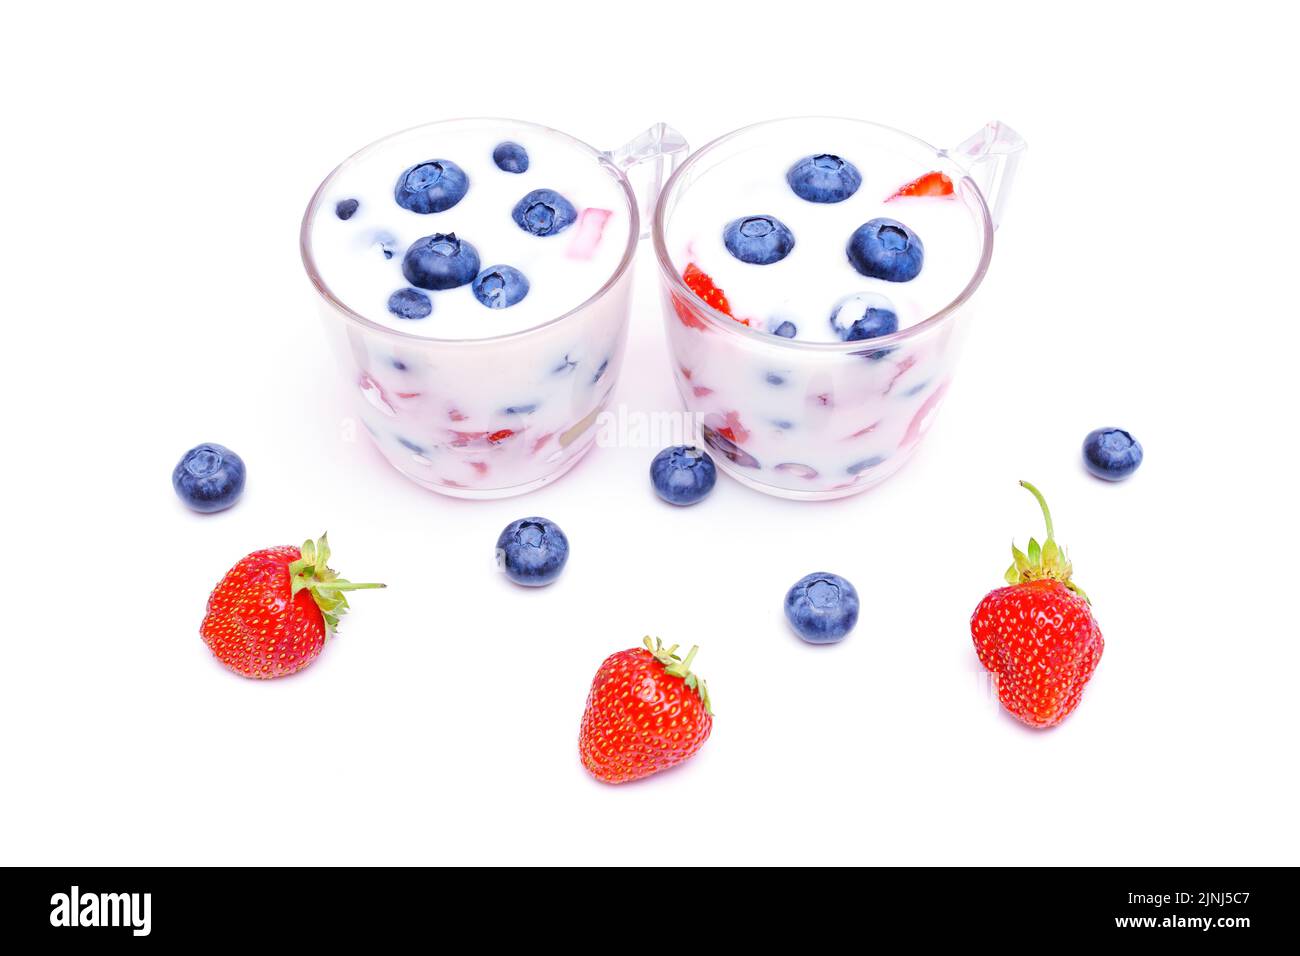 Homemade yogurt with fresh blueberries and strawberries on white. Stock Photo